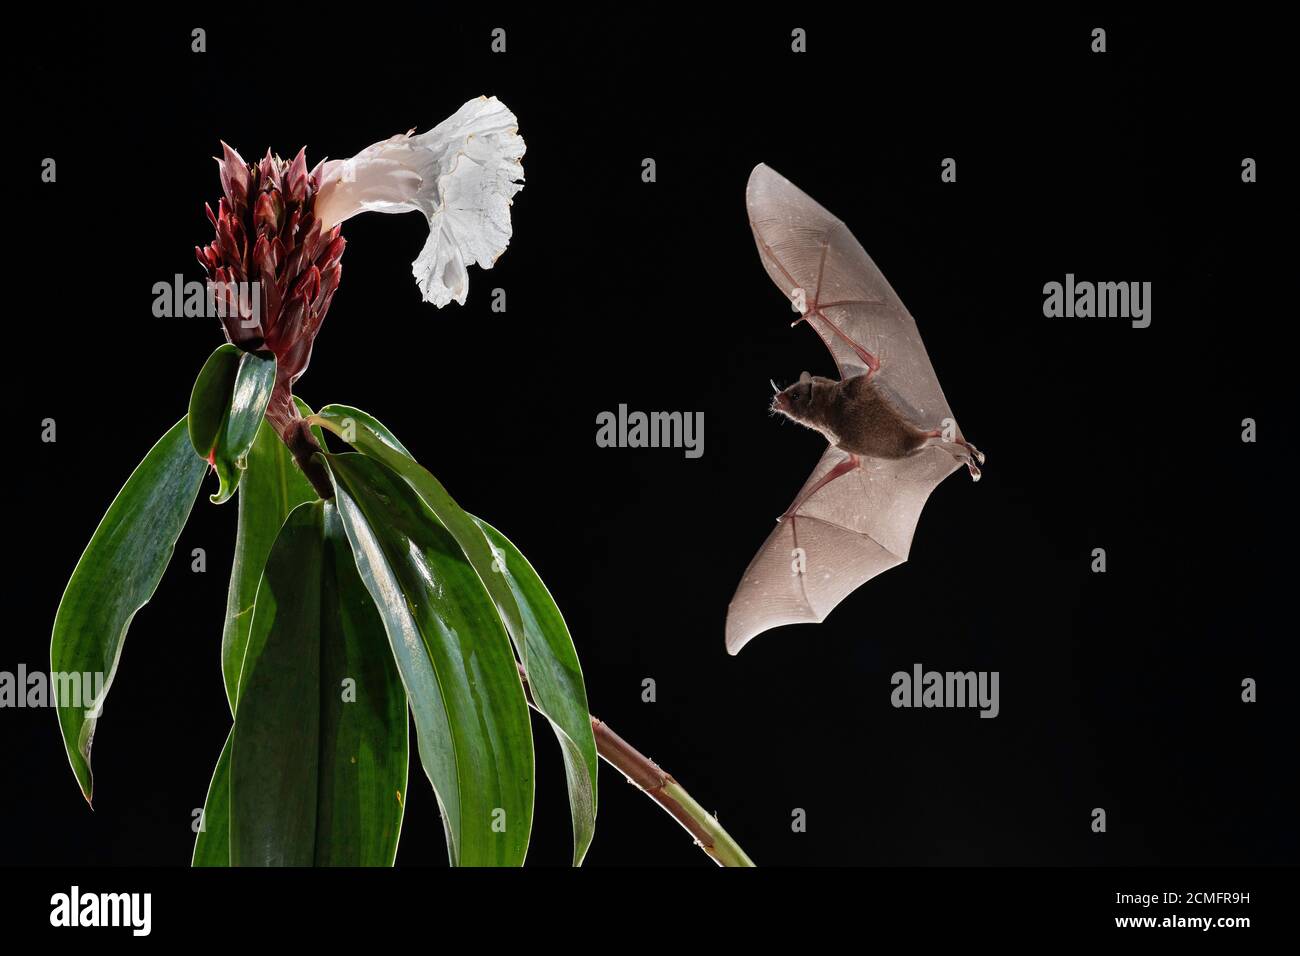 Le Bat long tongué de Pallas (Glossophaga soricina) se nourrissant de la fleur de Hite Costus (Costus speciosus), forêt tropicale des basses terres, Costa Rica Banque D'Images